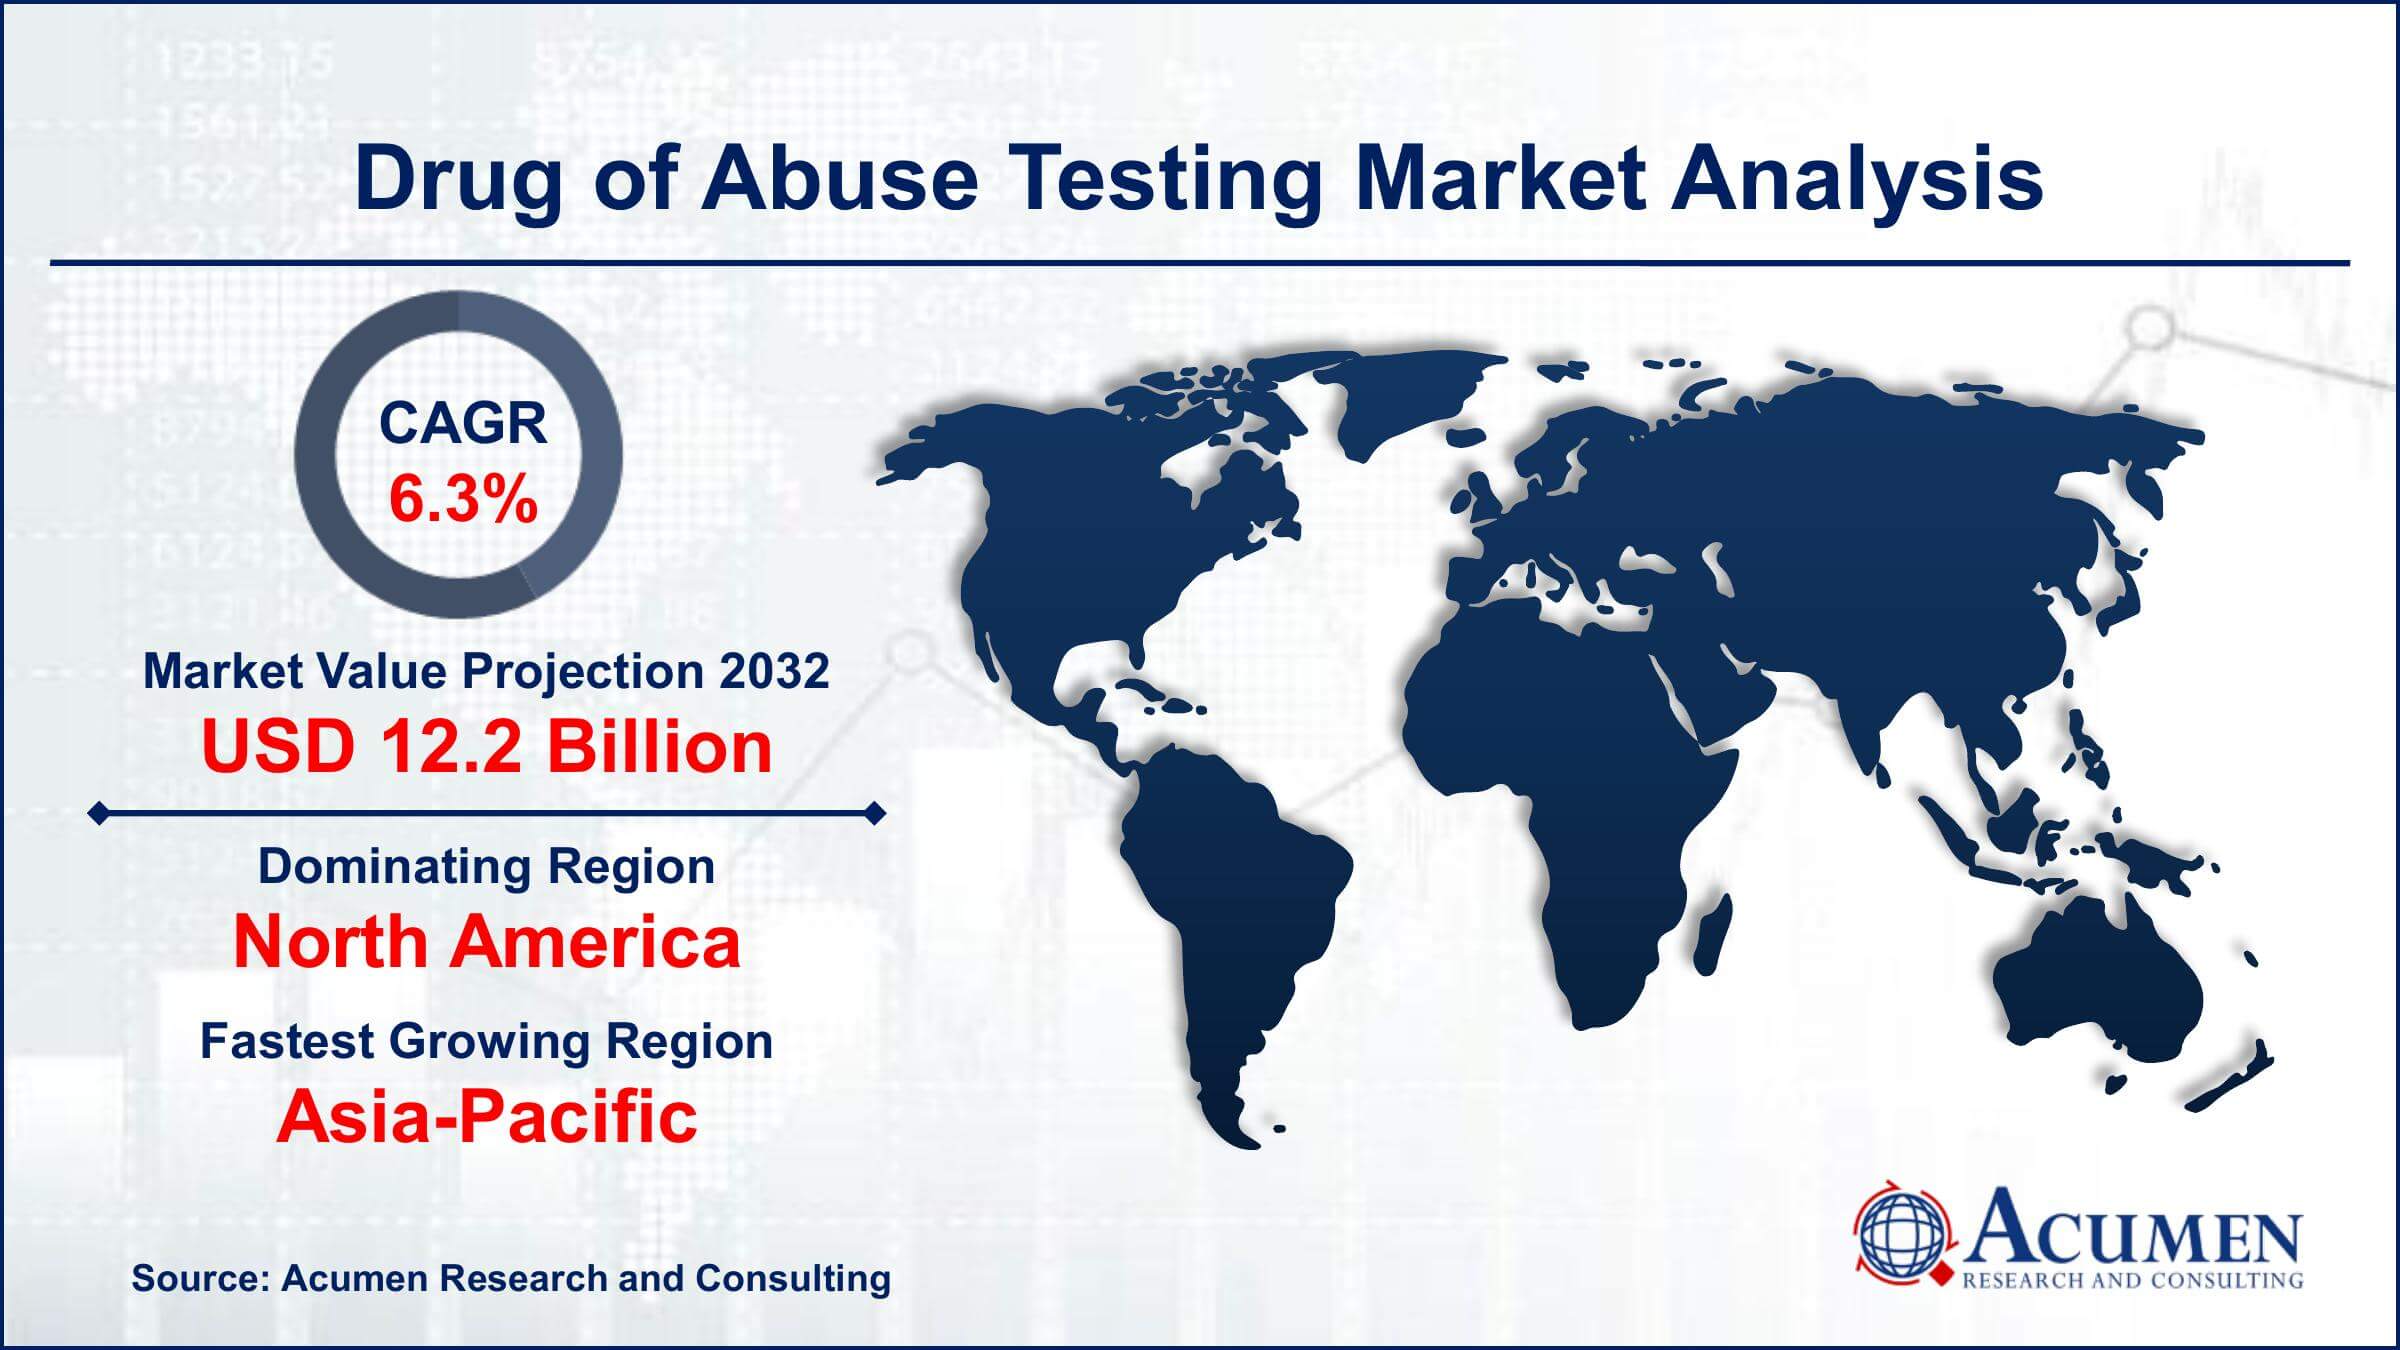 Global Drug of Abuse Testing Market Trends